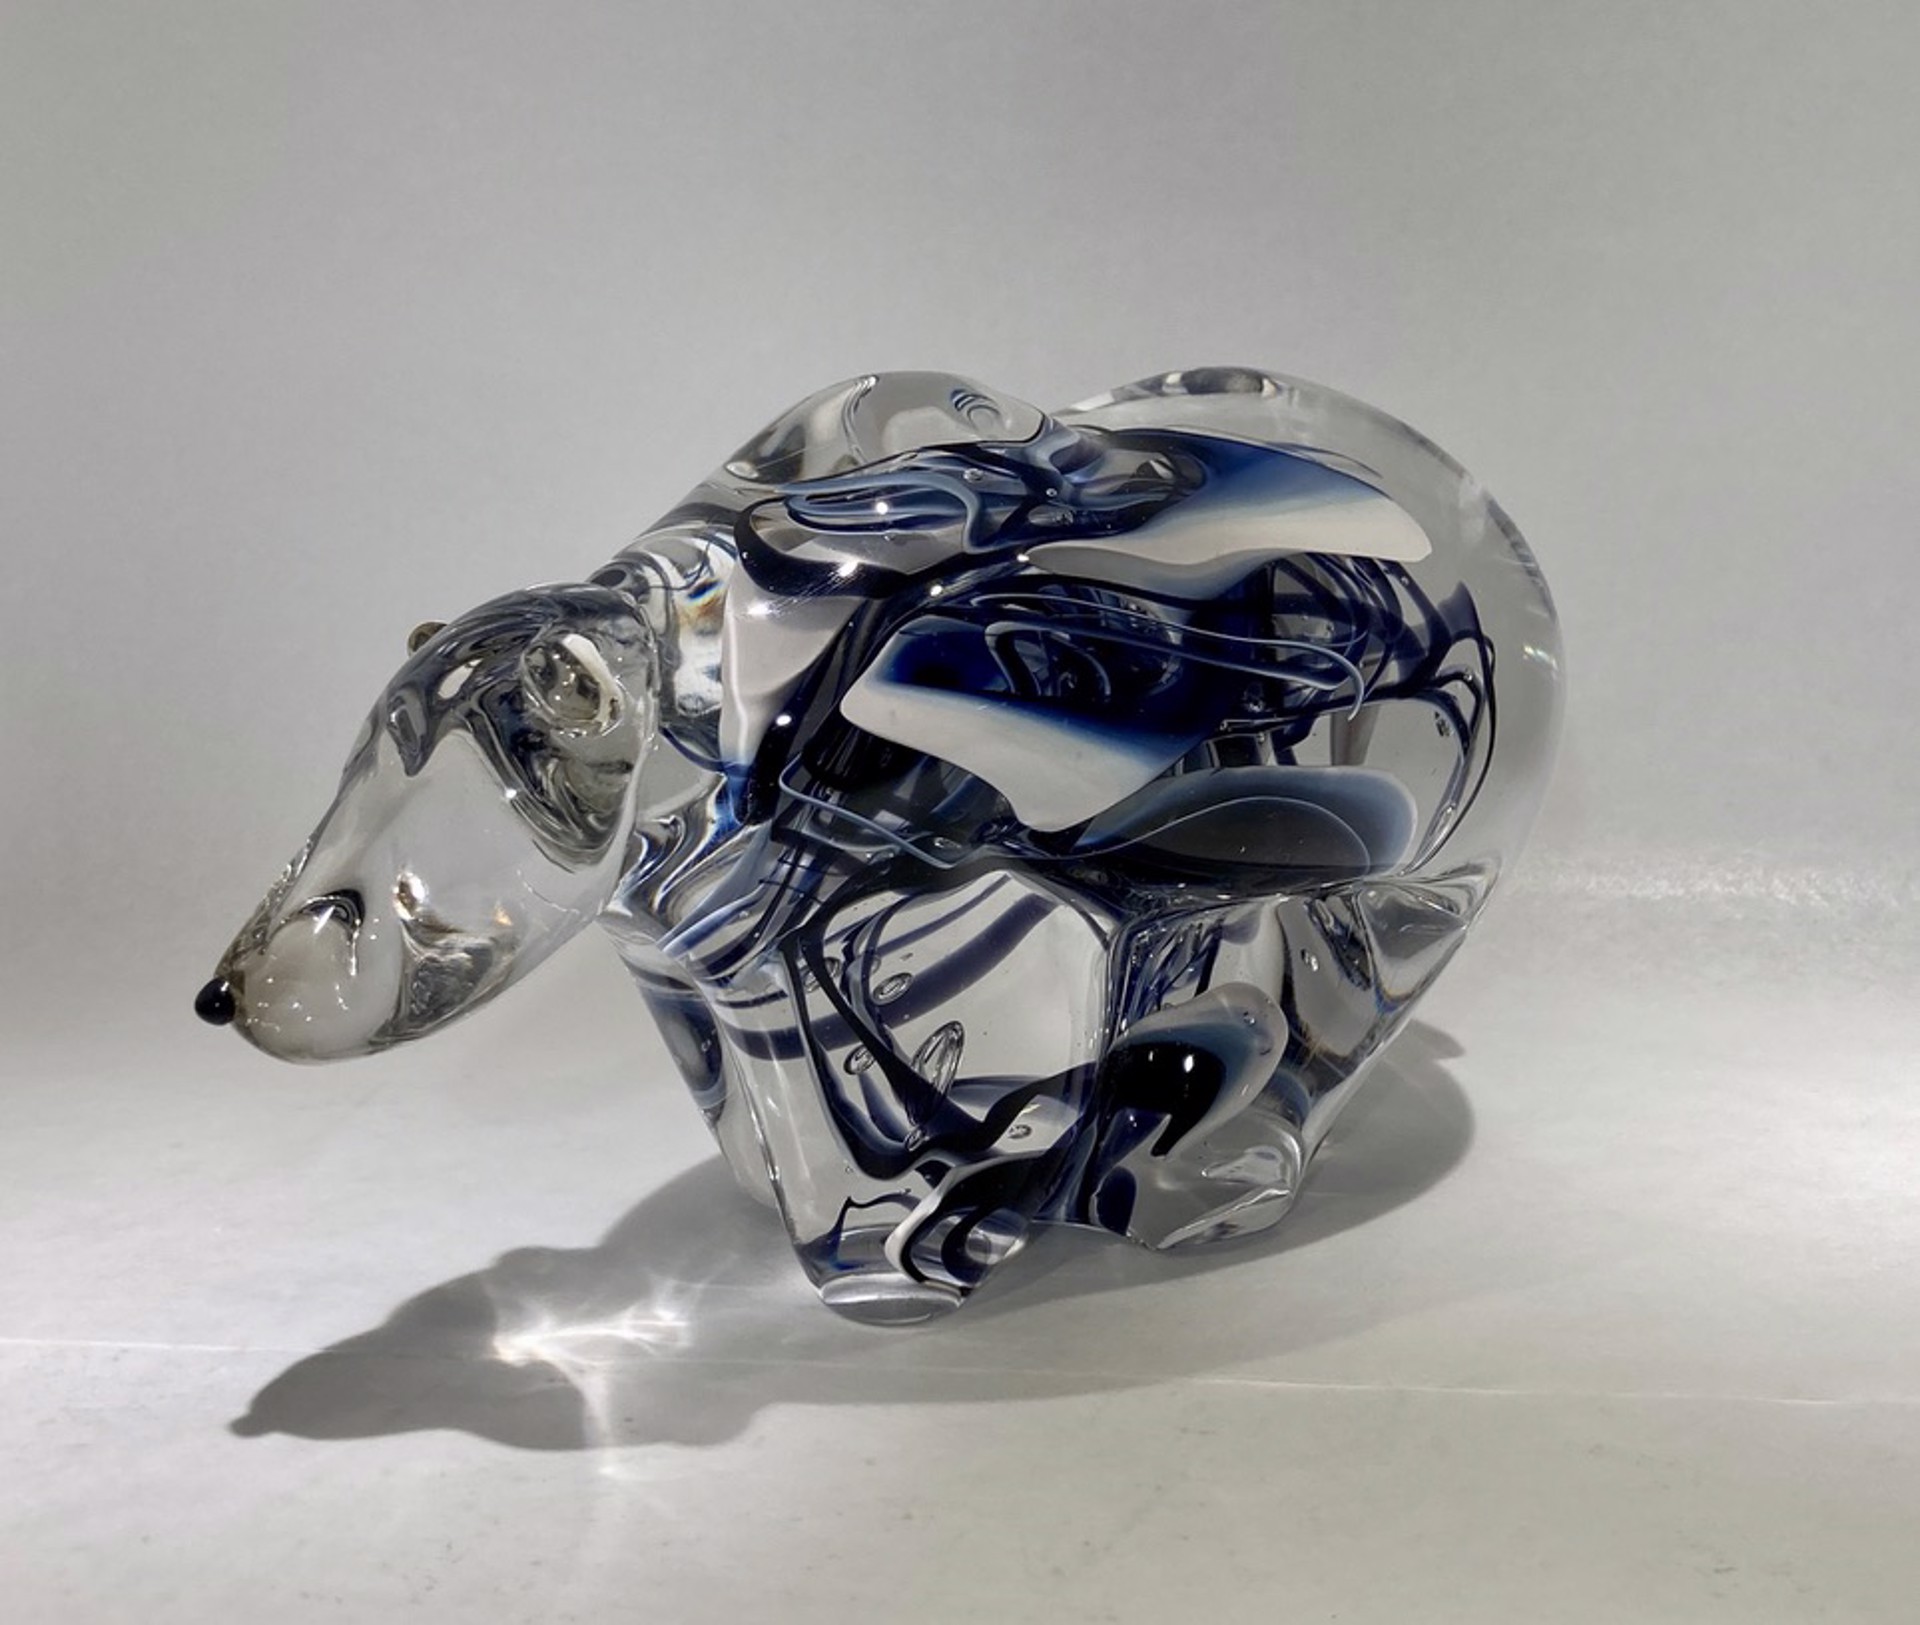 Glass Bear #3 by Hayden MacRae